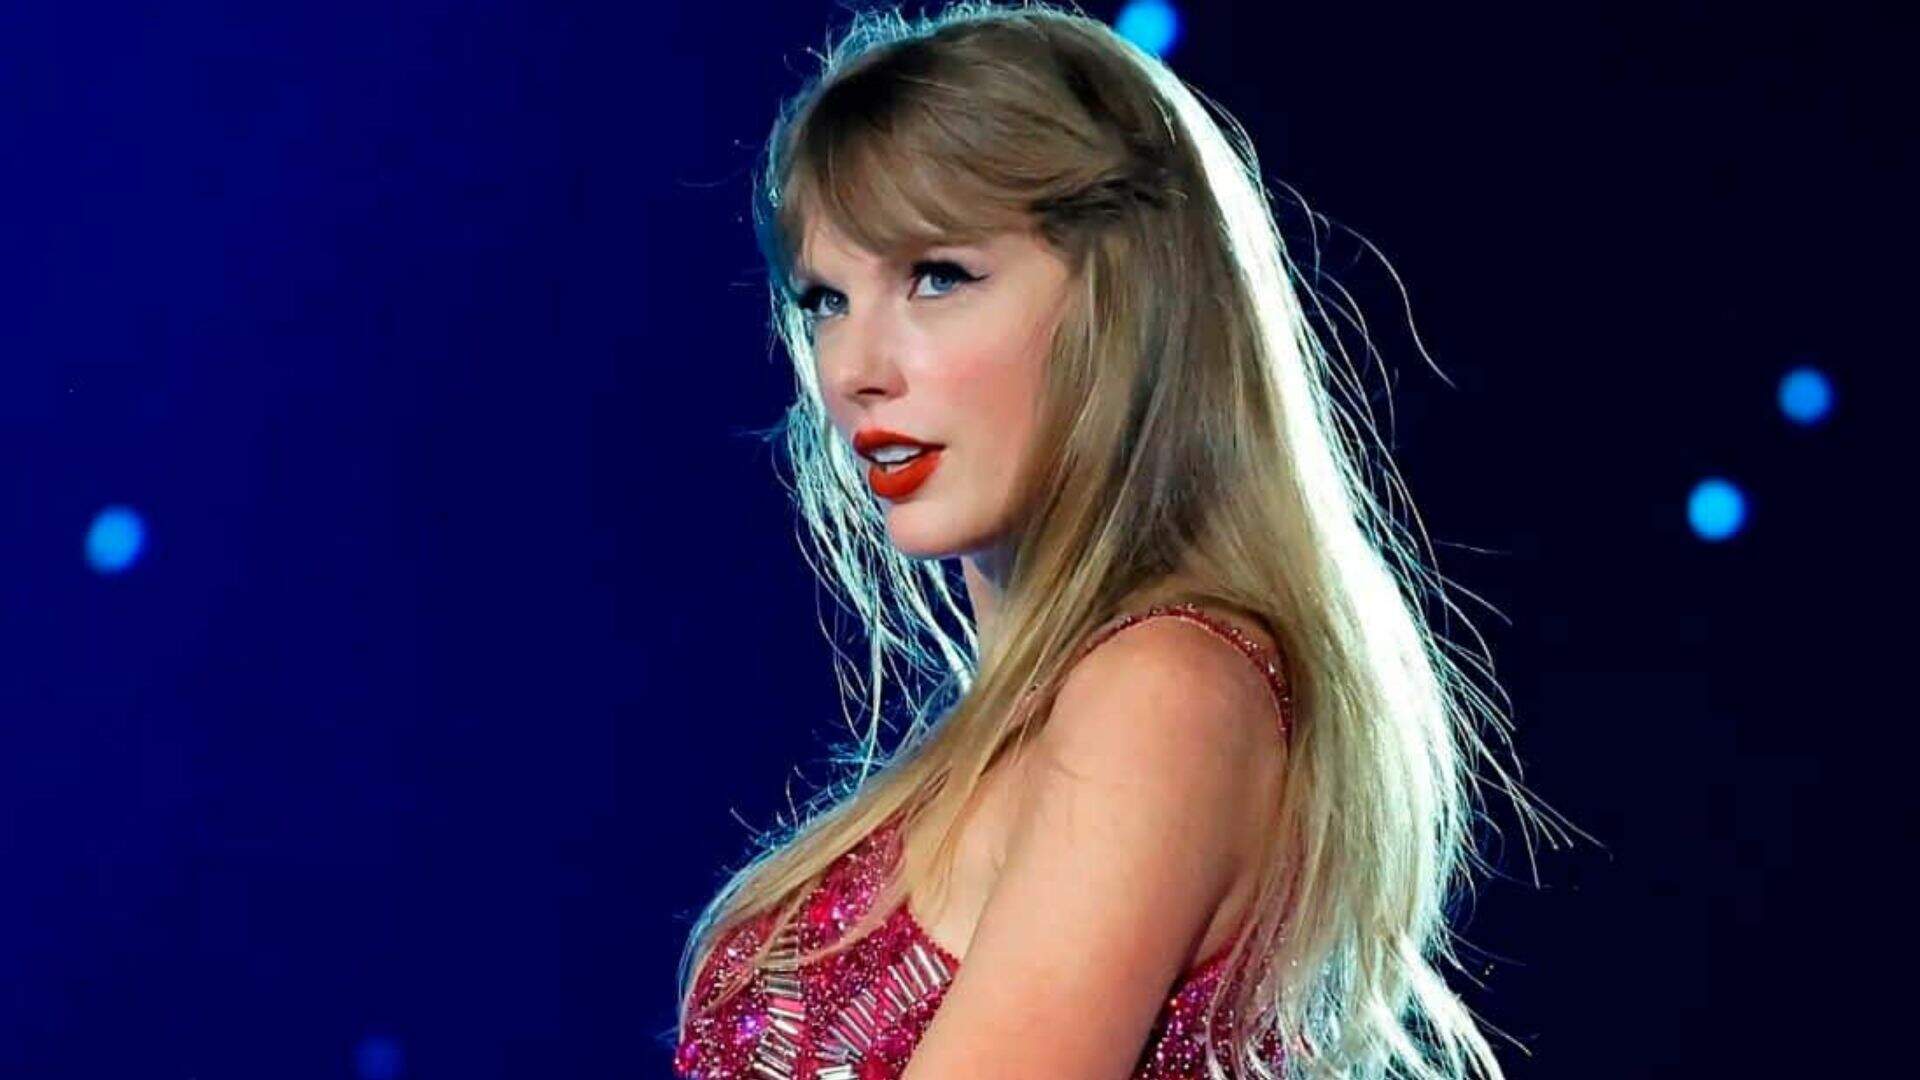 Em sua segunda apresentação no Brasil, Taylor Swift faz homenagem emocionante para fã que morreu durante seu show no RJ - Metropolitana FM